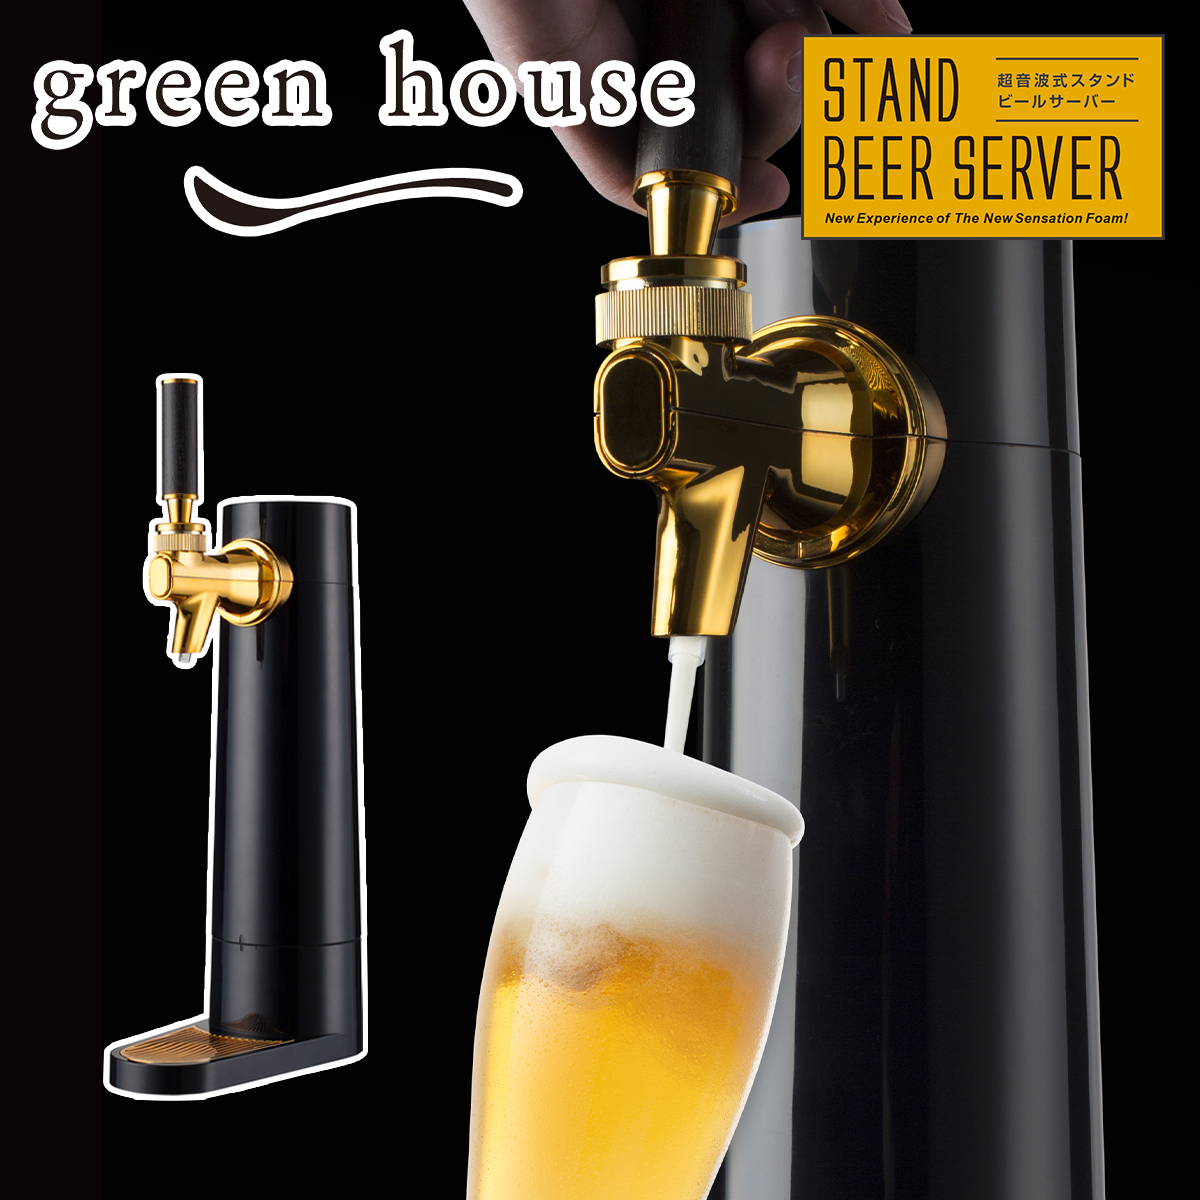 グリーンハウス GREEN HOUSE スタンド型ビアサーバー 超音波式スタンド型ビールサーバー 家庭用 コードレス